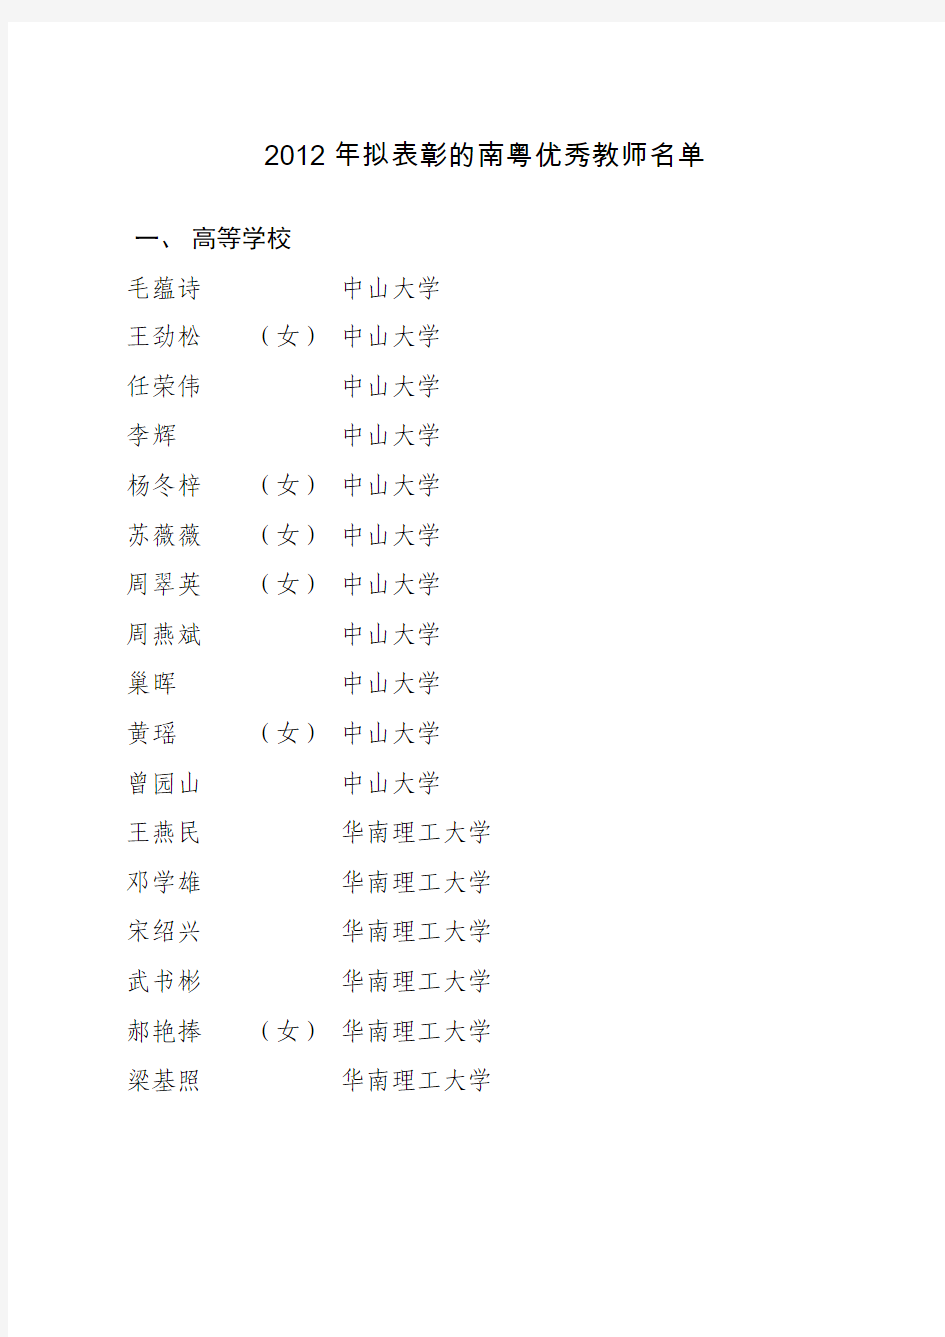 2012年拟表彰的南粤优秀教师名单-公示